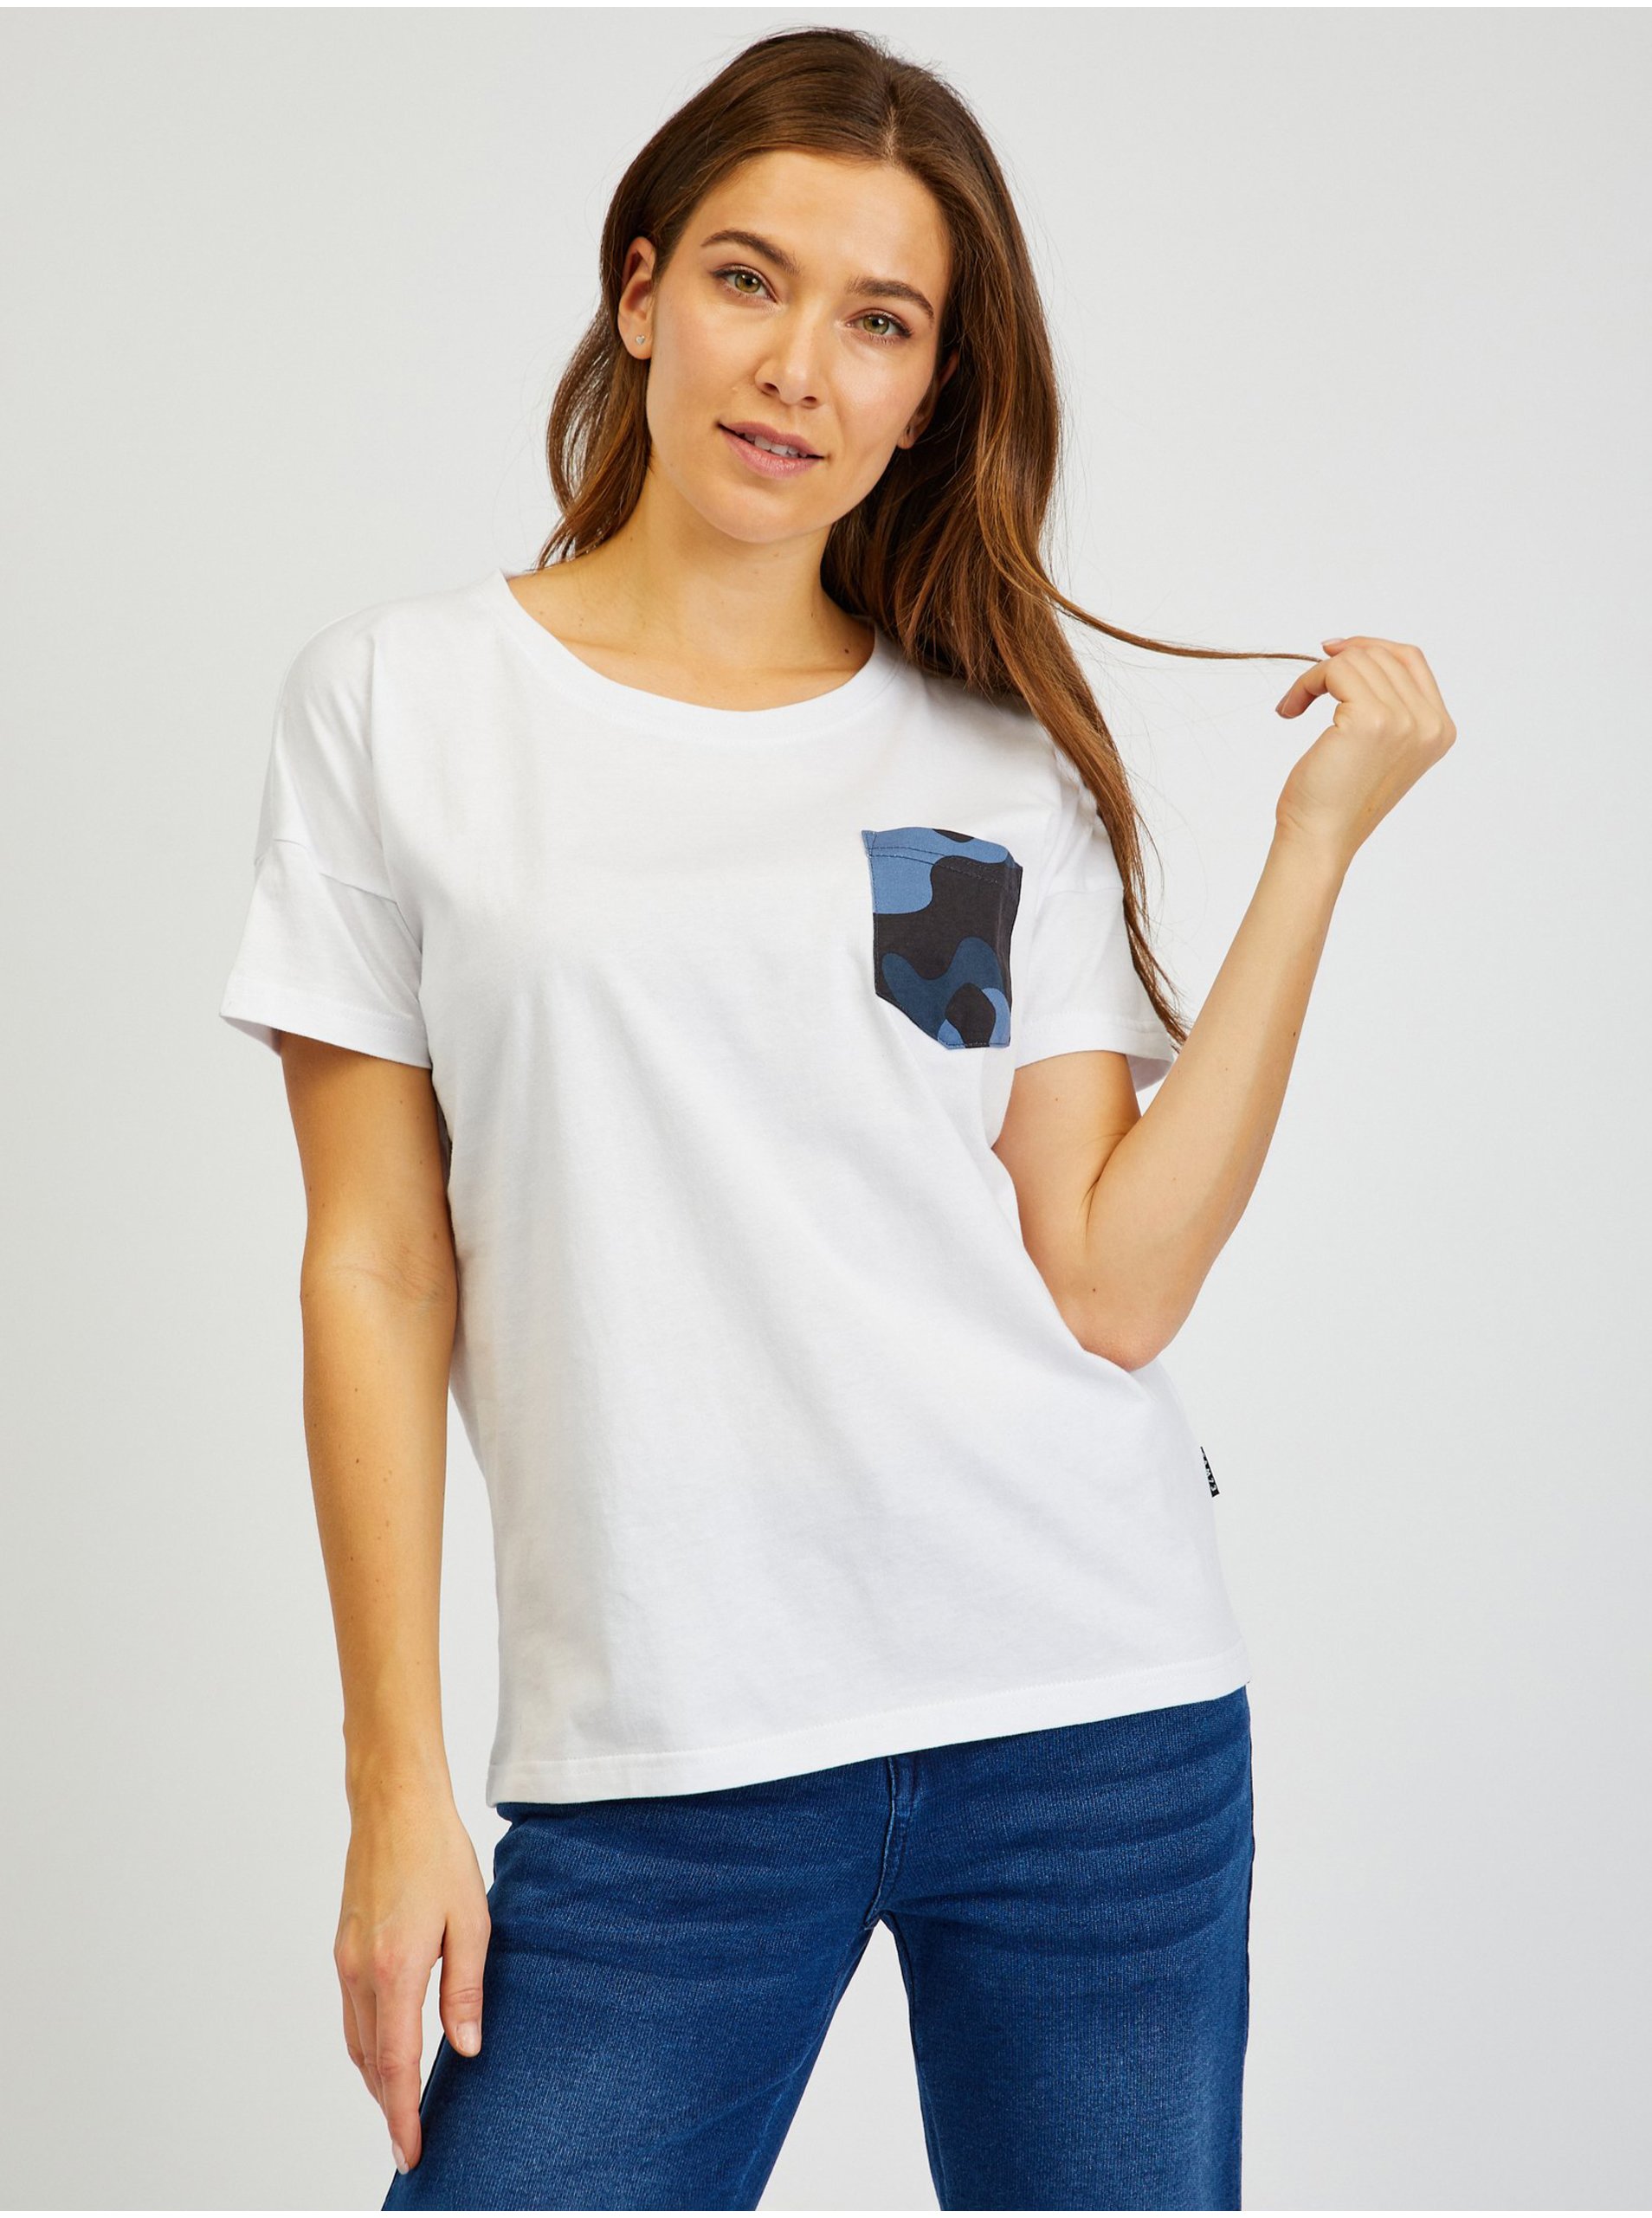 E-shop Bílé dámské tričko s kapsičkou SAM 73 Marie